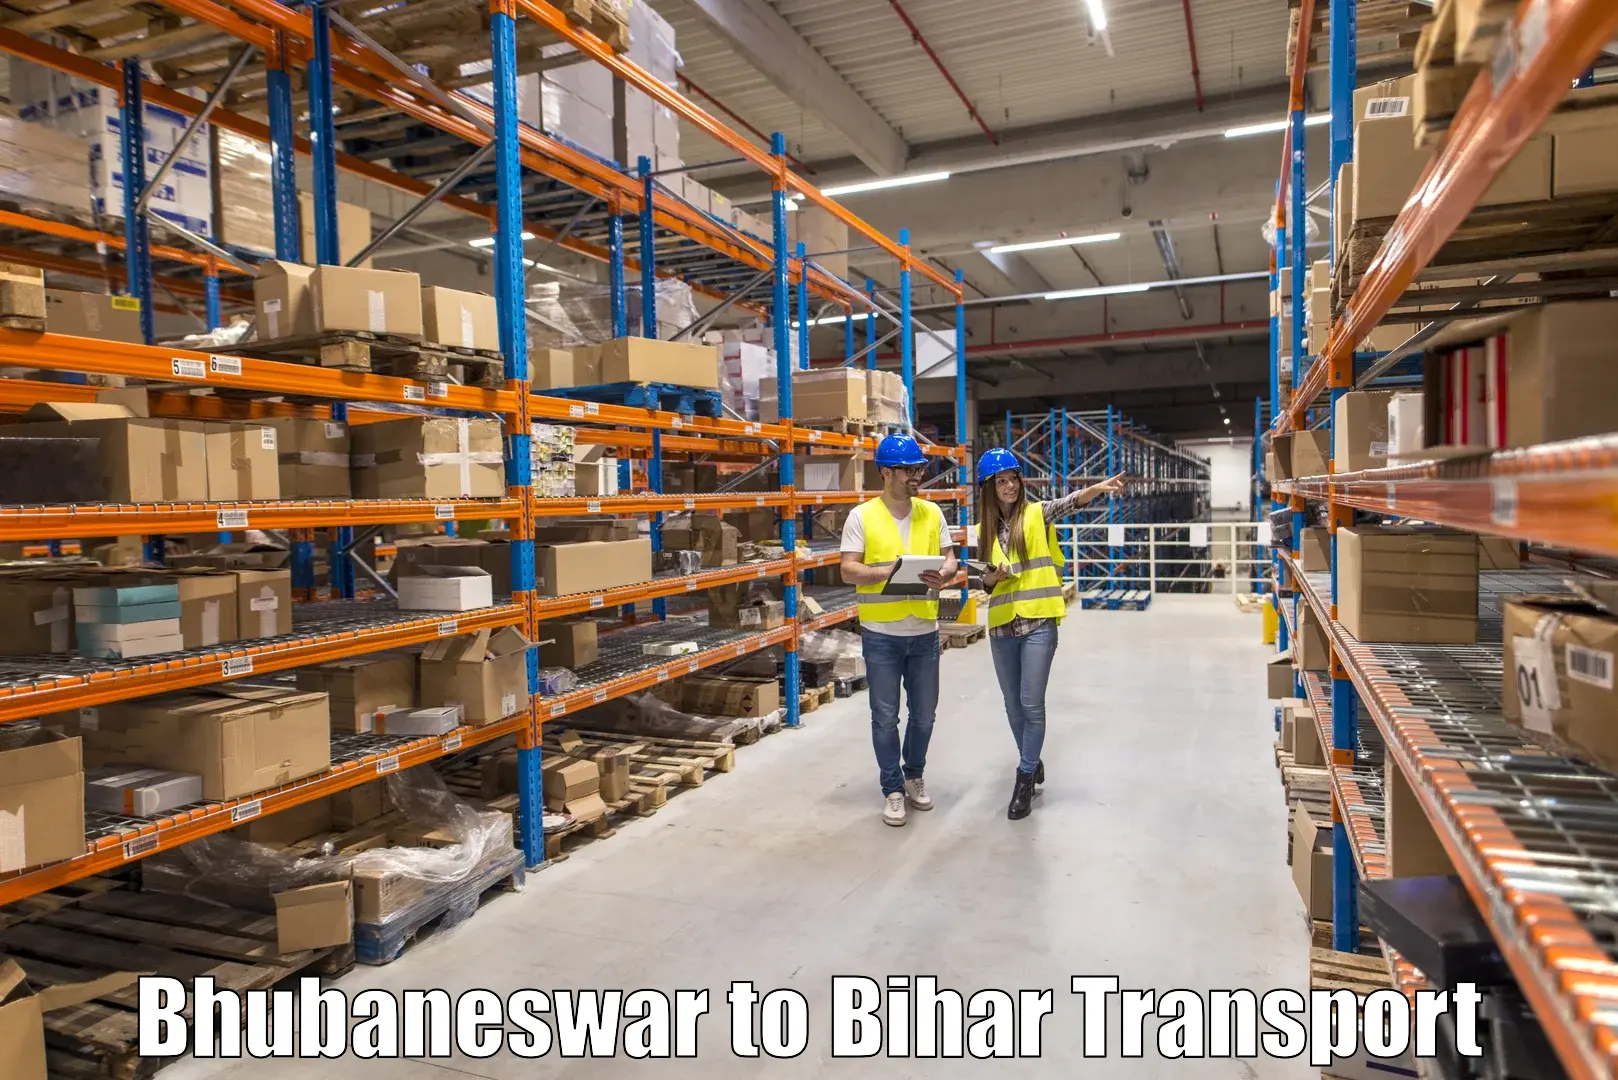 Furniture transport service Bhubaneswar to Sikandara Jamui